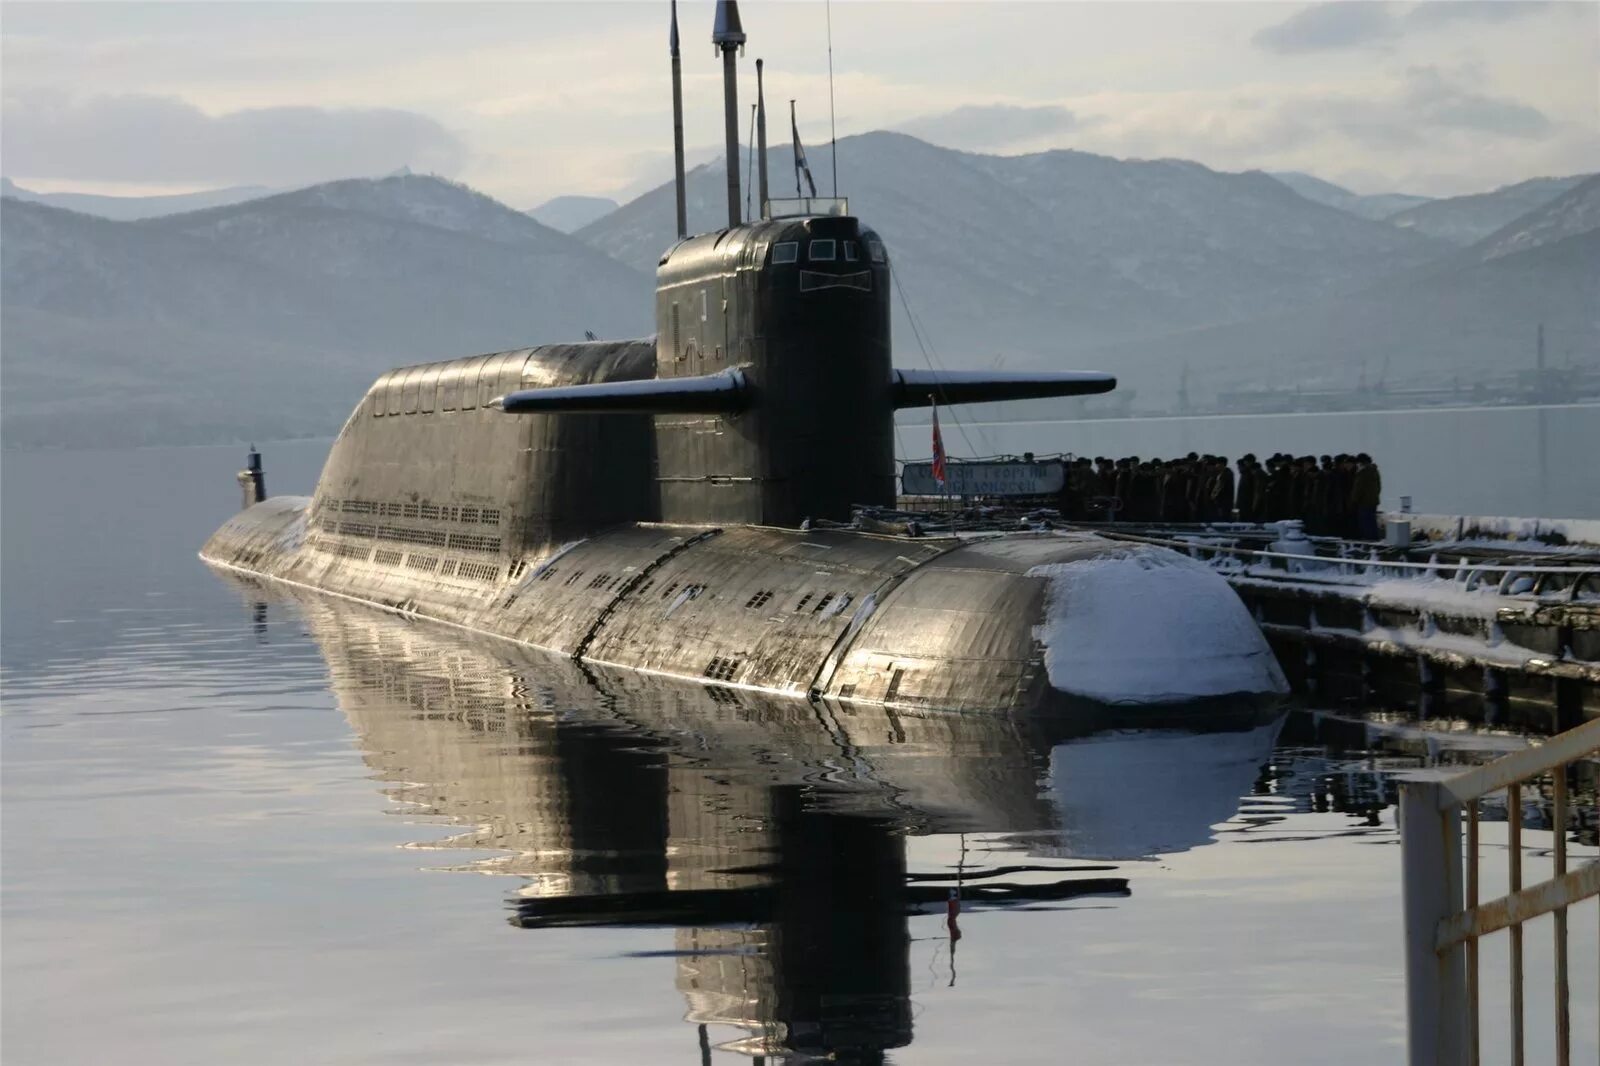 Пл видео. Подводная лодка 667бдр кальмар. Подводные лодки проекта 667бдр «кальмар». Подводные лодки проекта 667бдрм «Дельфин». БДРМ 667 проект подводная лодка.